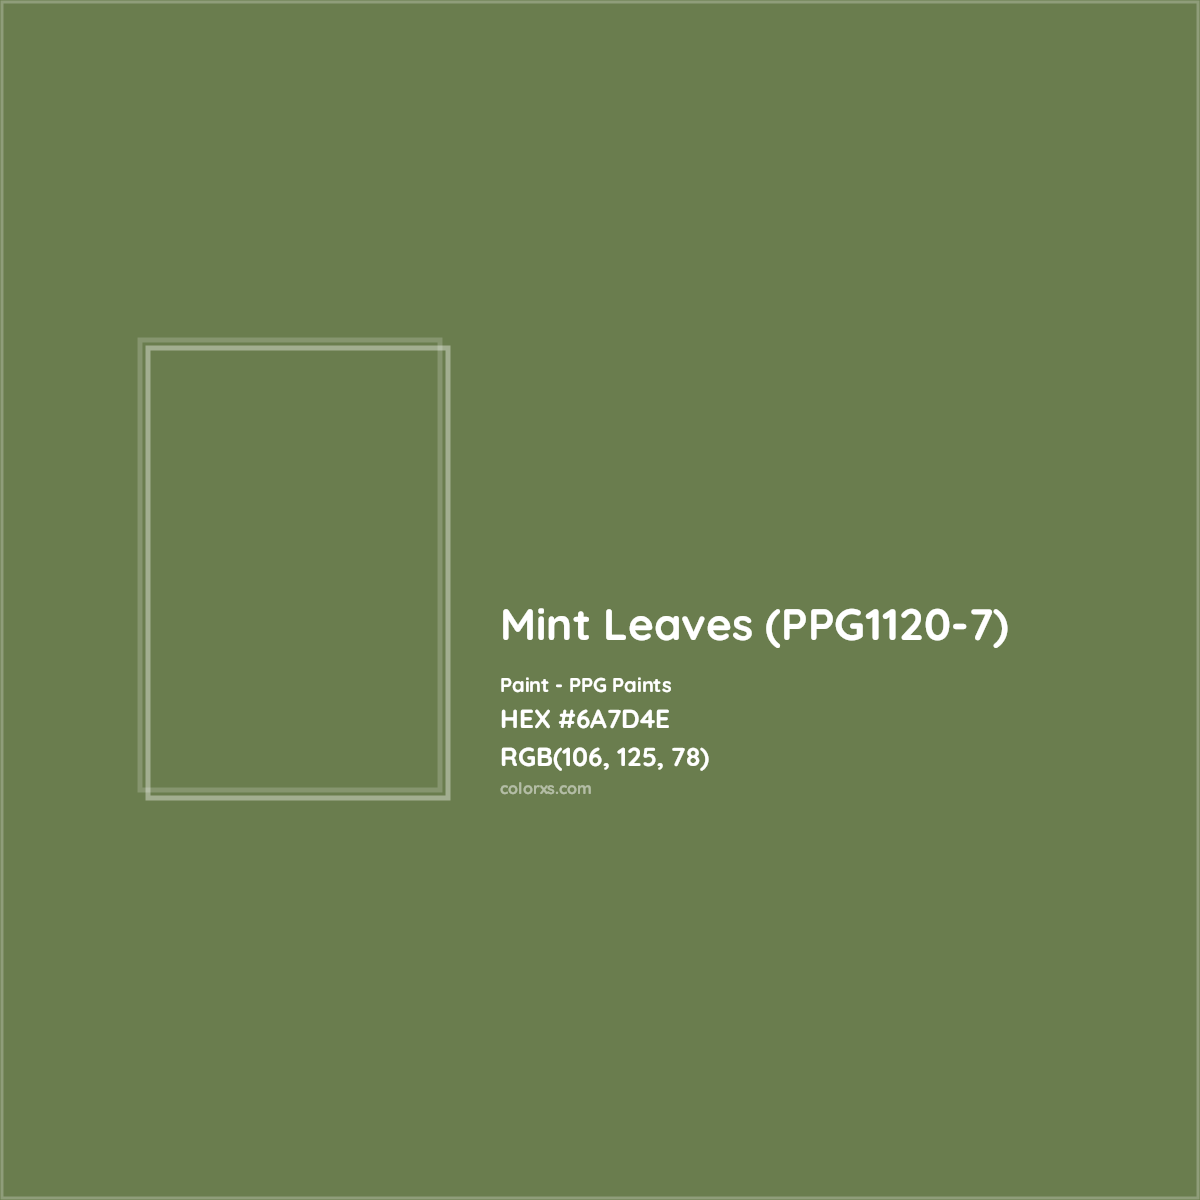 HEX #6A7D4E Mint Leaves (PPG1120-7) Paint PPG Paints - Color Code